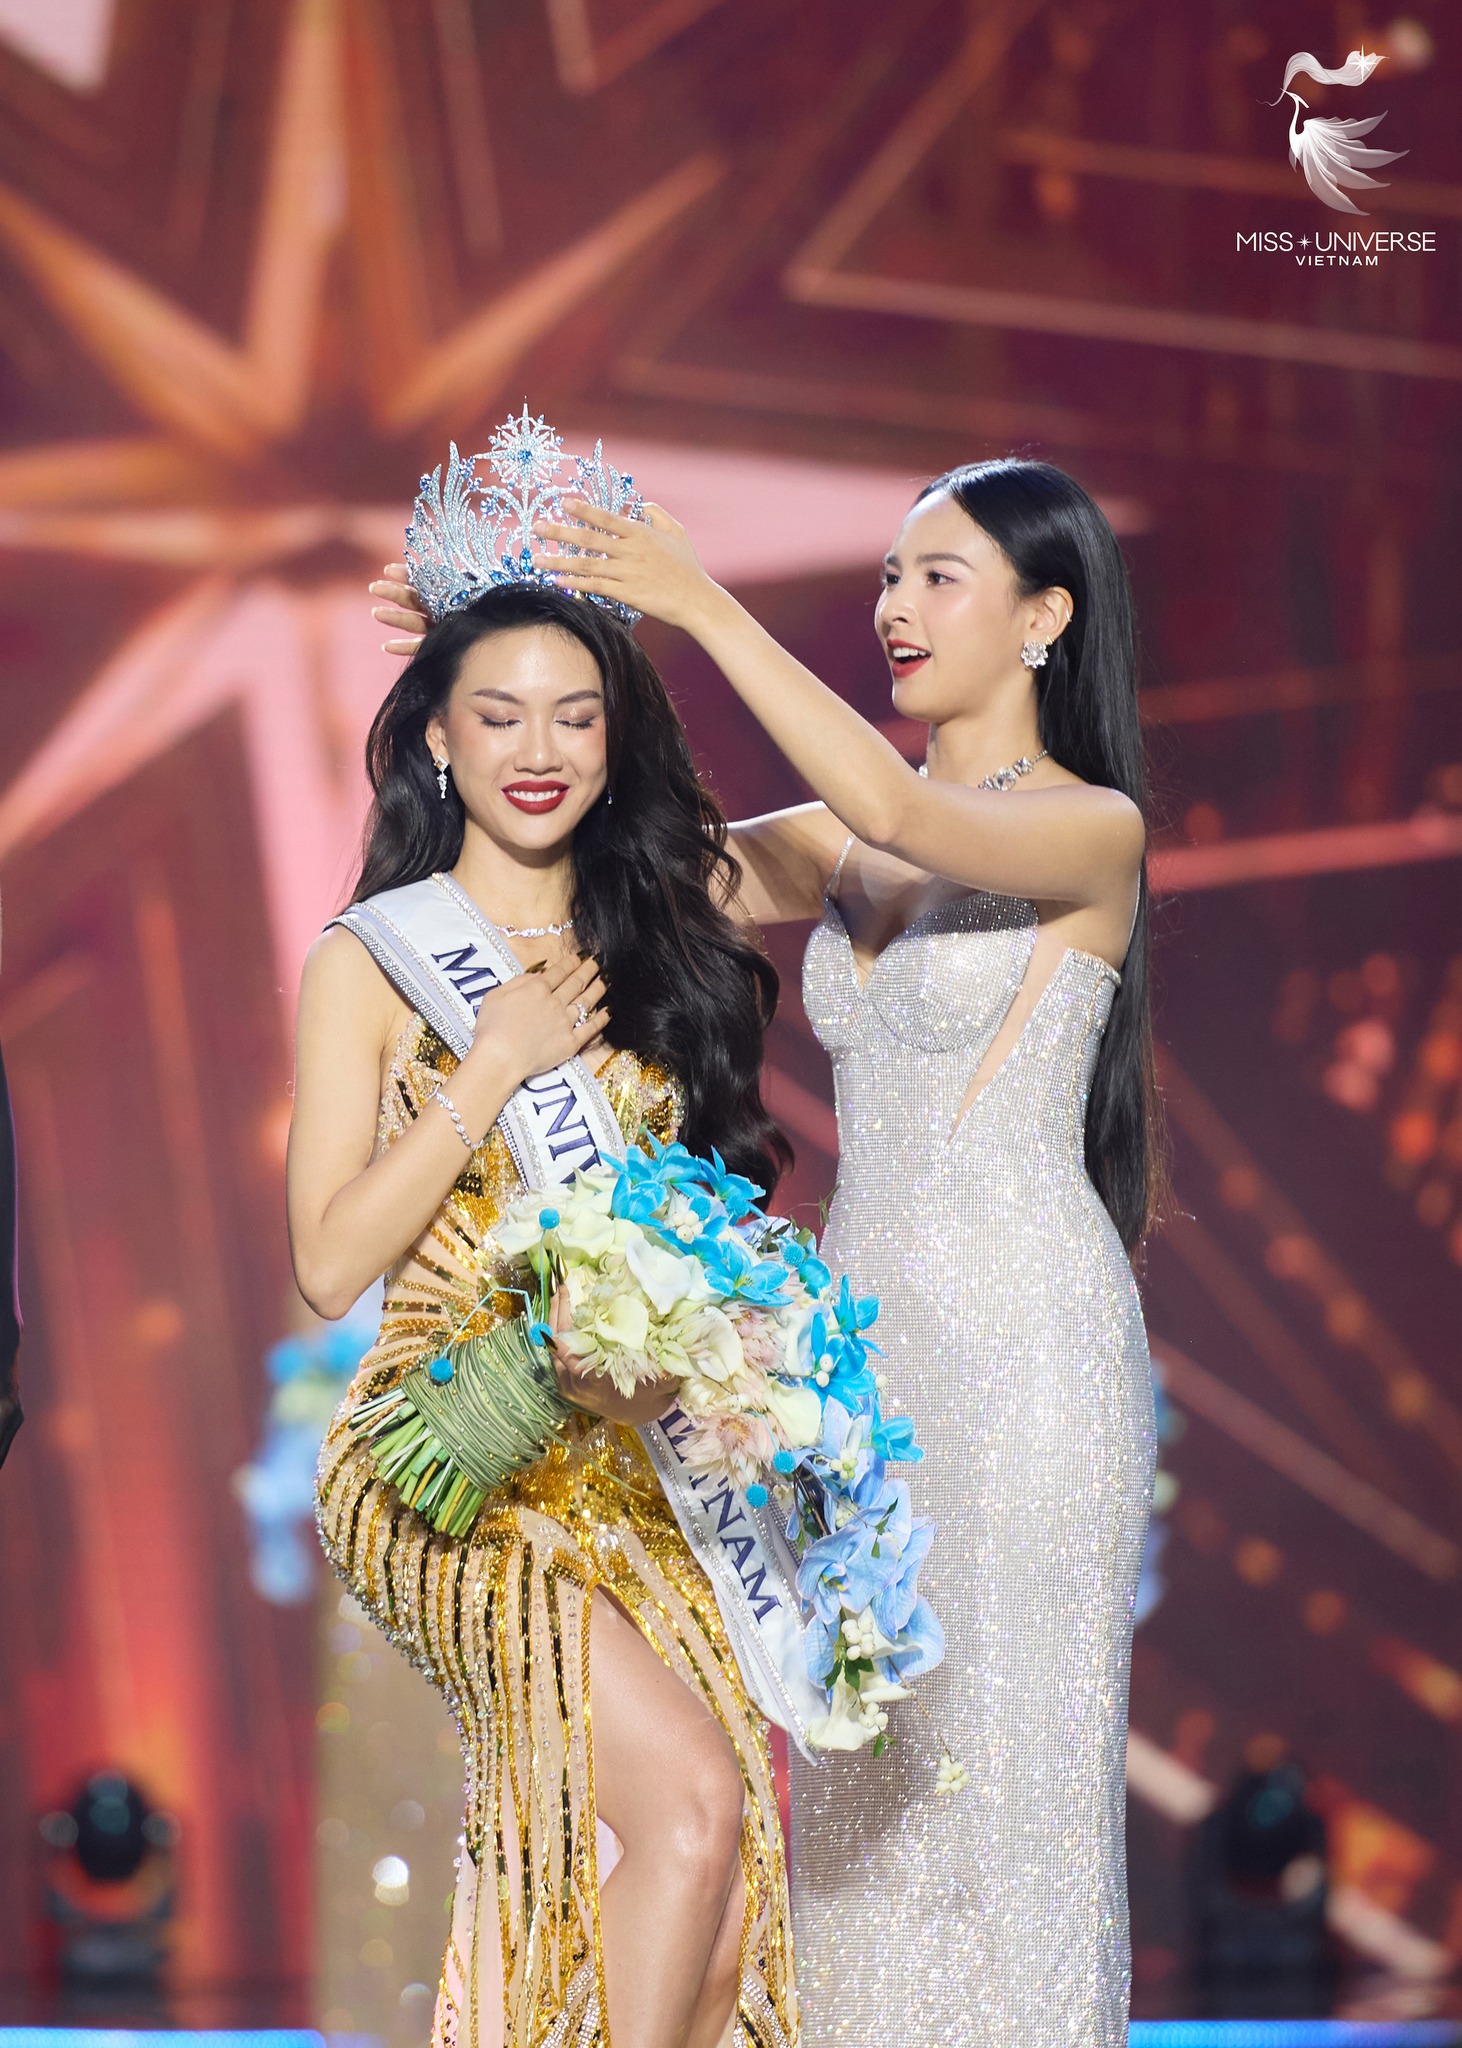 Bùi Quỳnh Hoa được dự đoán lọt Top 20 Miss Universe 2023 dù vướng loạt bê bối chấn động - ảnh 2